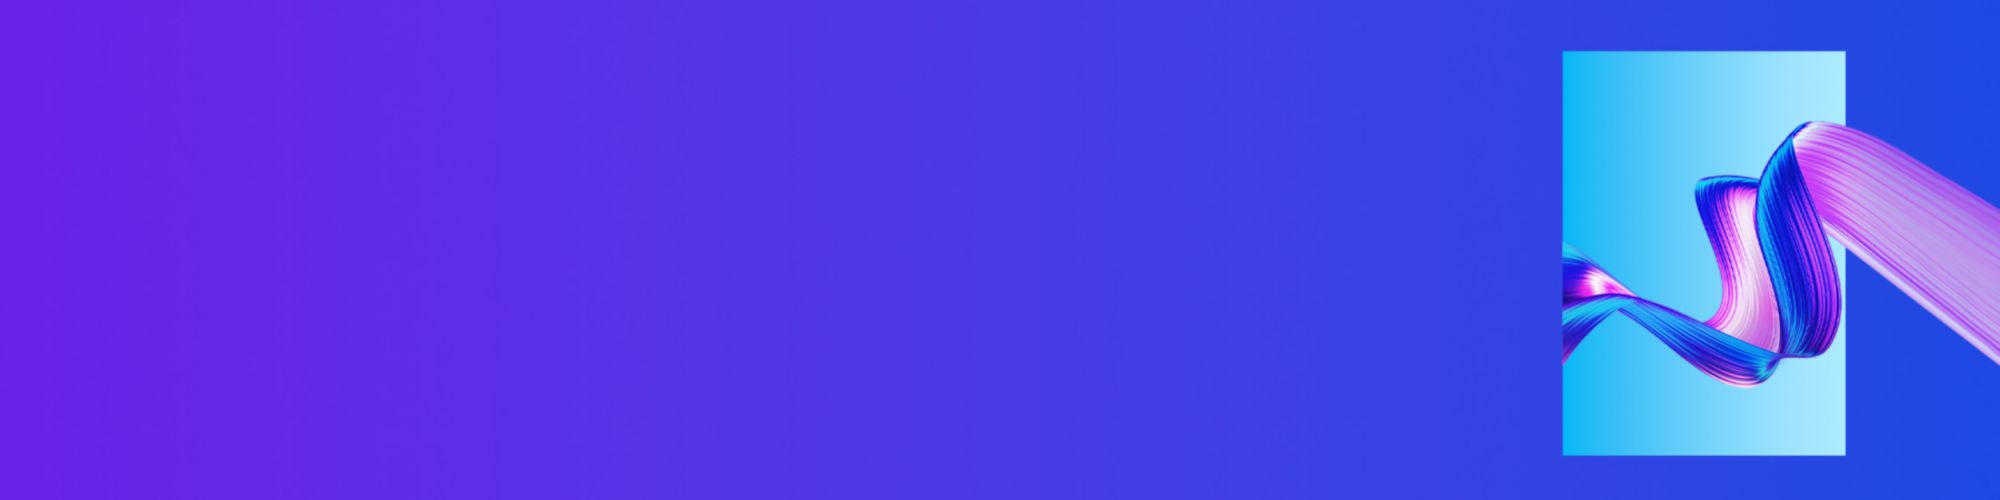 violet-and-blue-3d-design